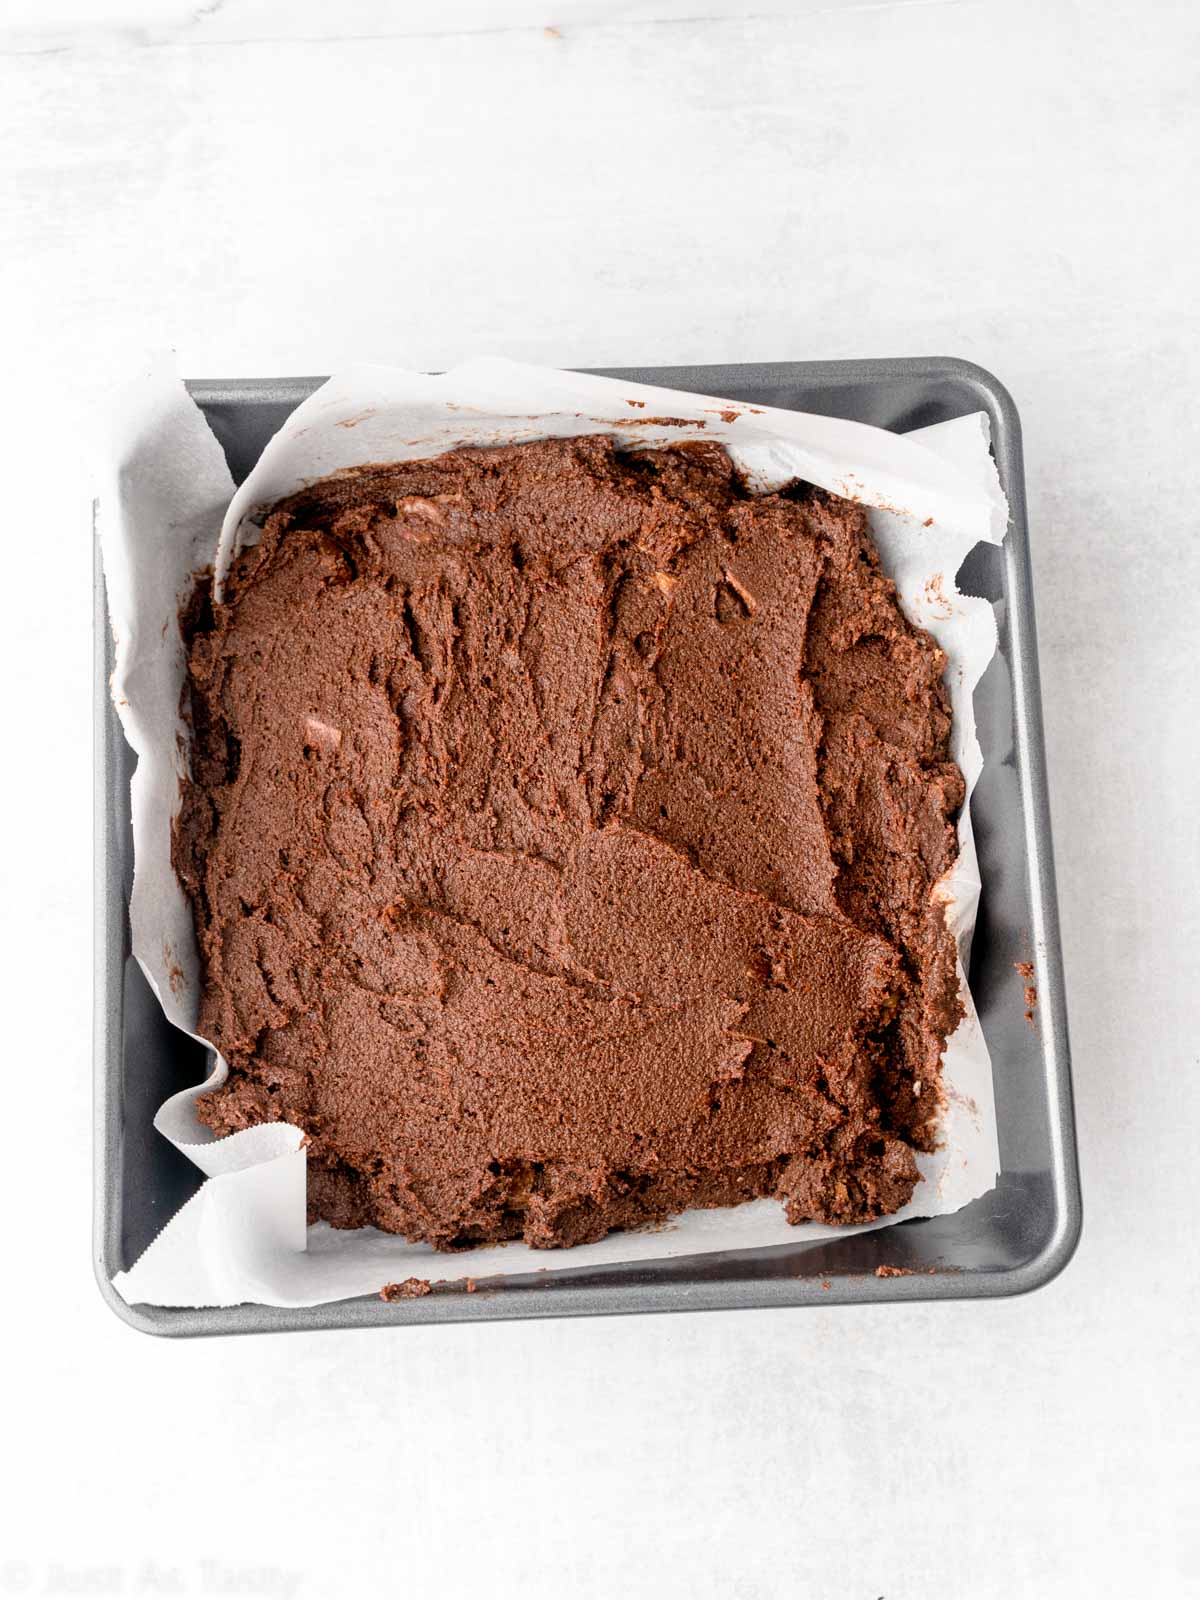 Brownie batter in a pan.